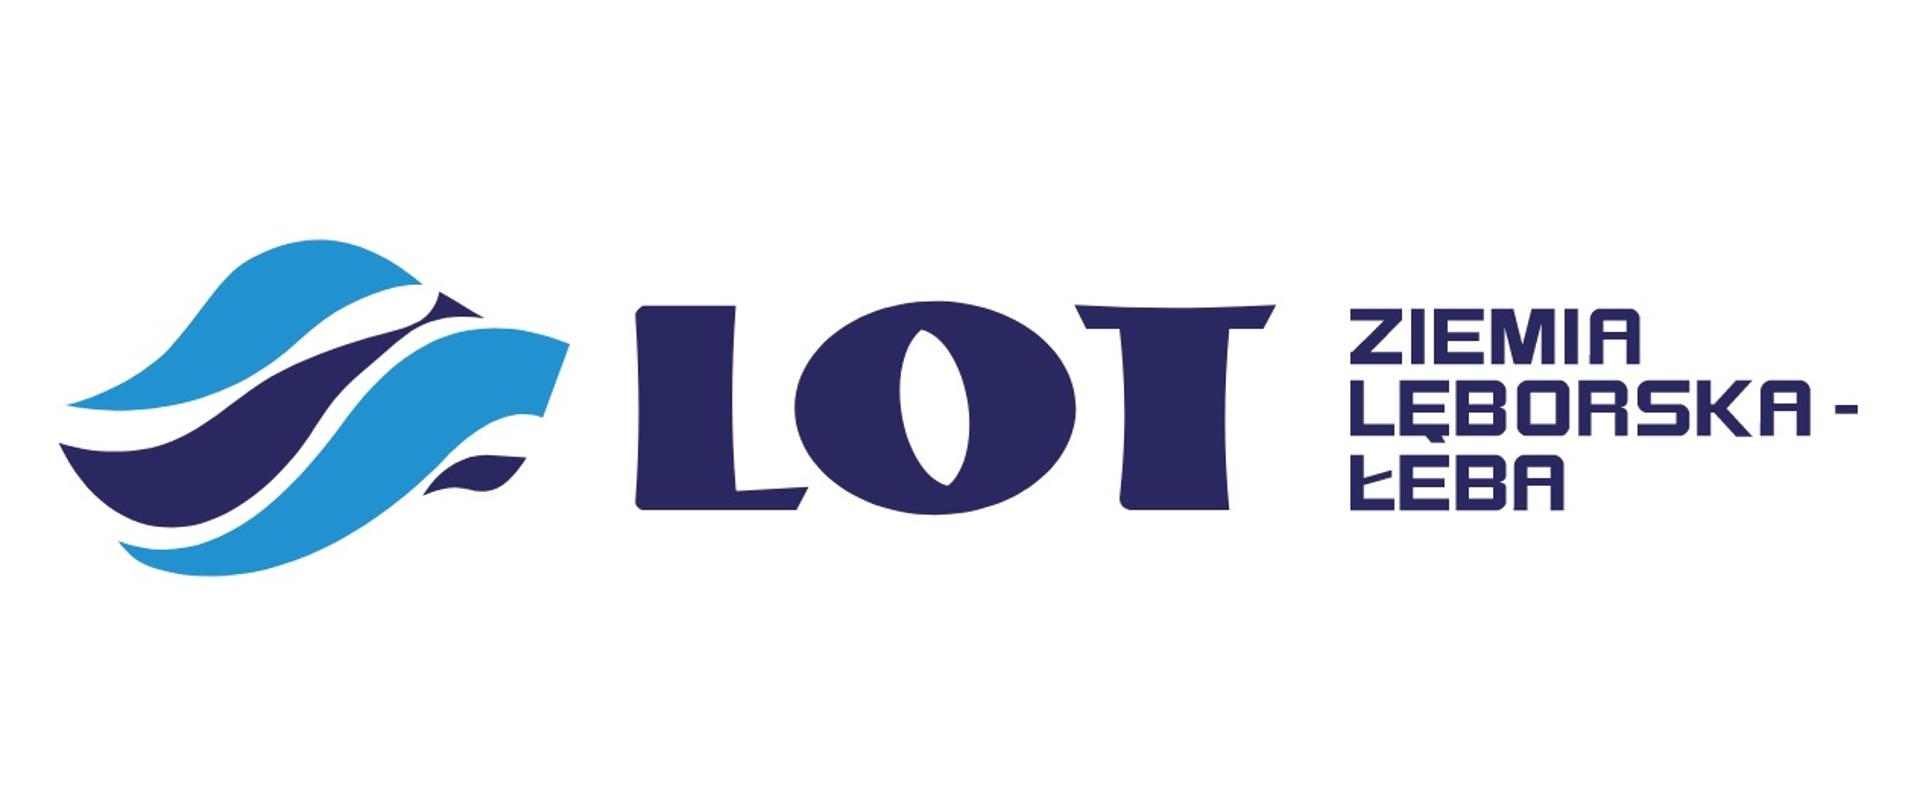 Logo Lokalnej Organizacji Turystycznej "Ziemia Lęborska - Łeba", składa się z obrazka przypominającego fale oraz tekstu: "LOT Ziemia Lęborska - Łeba"